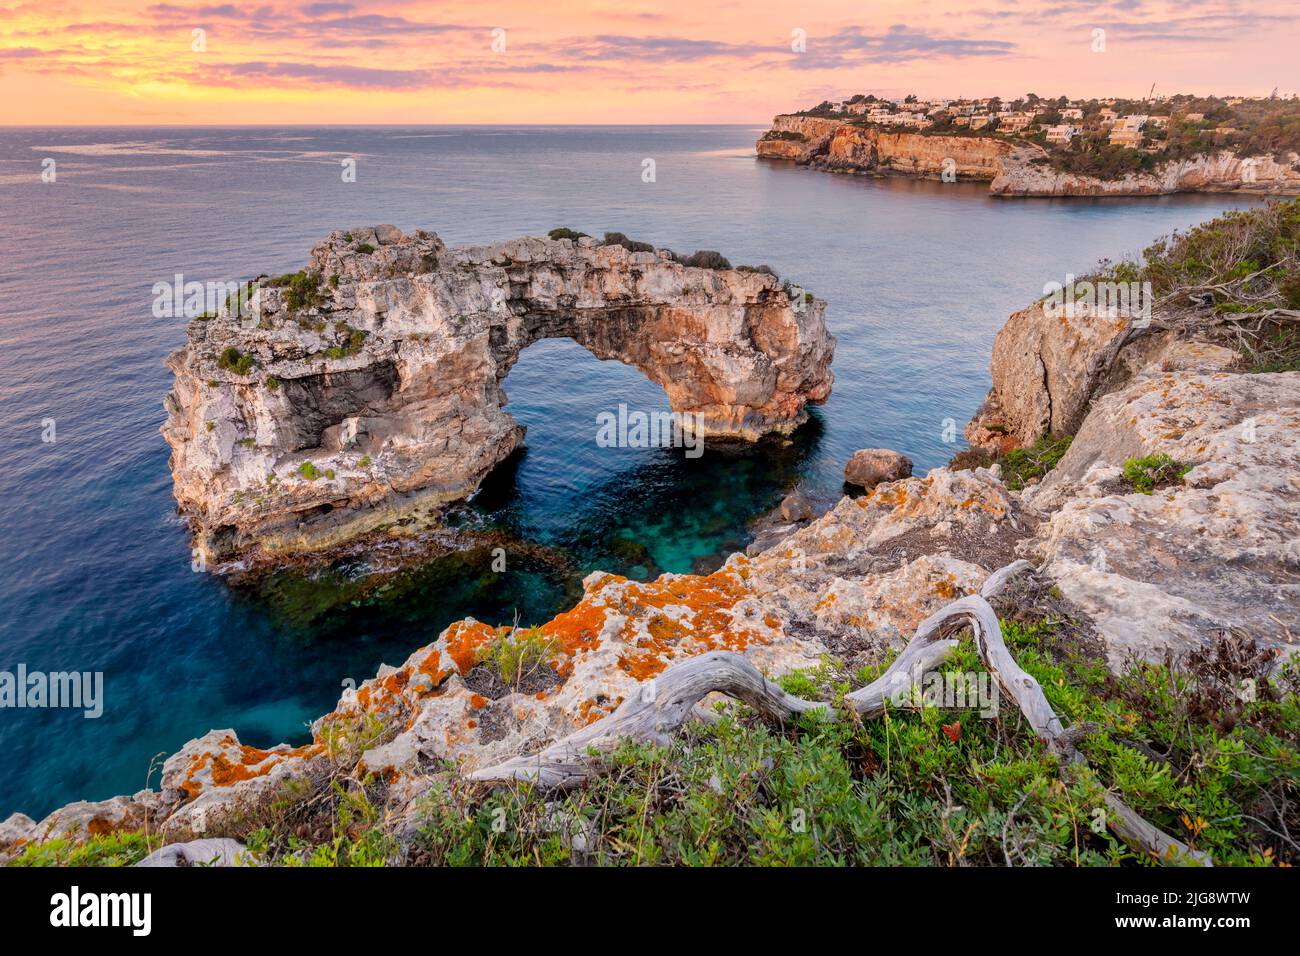 Espagne, Iles Baléares, Majorque, Santanyi. Es Pontas ou Mirador es Pontas, une arche naturelle de roche à côté des falaises de la côte sud-est Banque D'Images